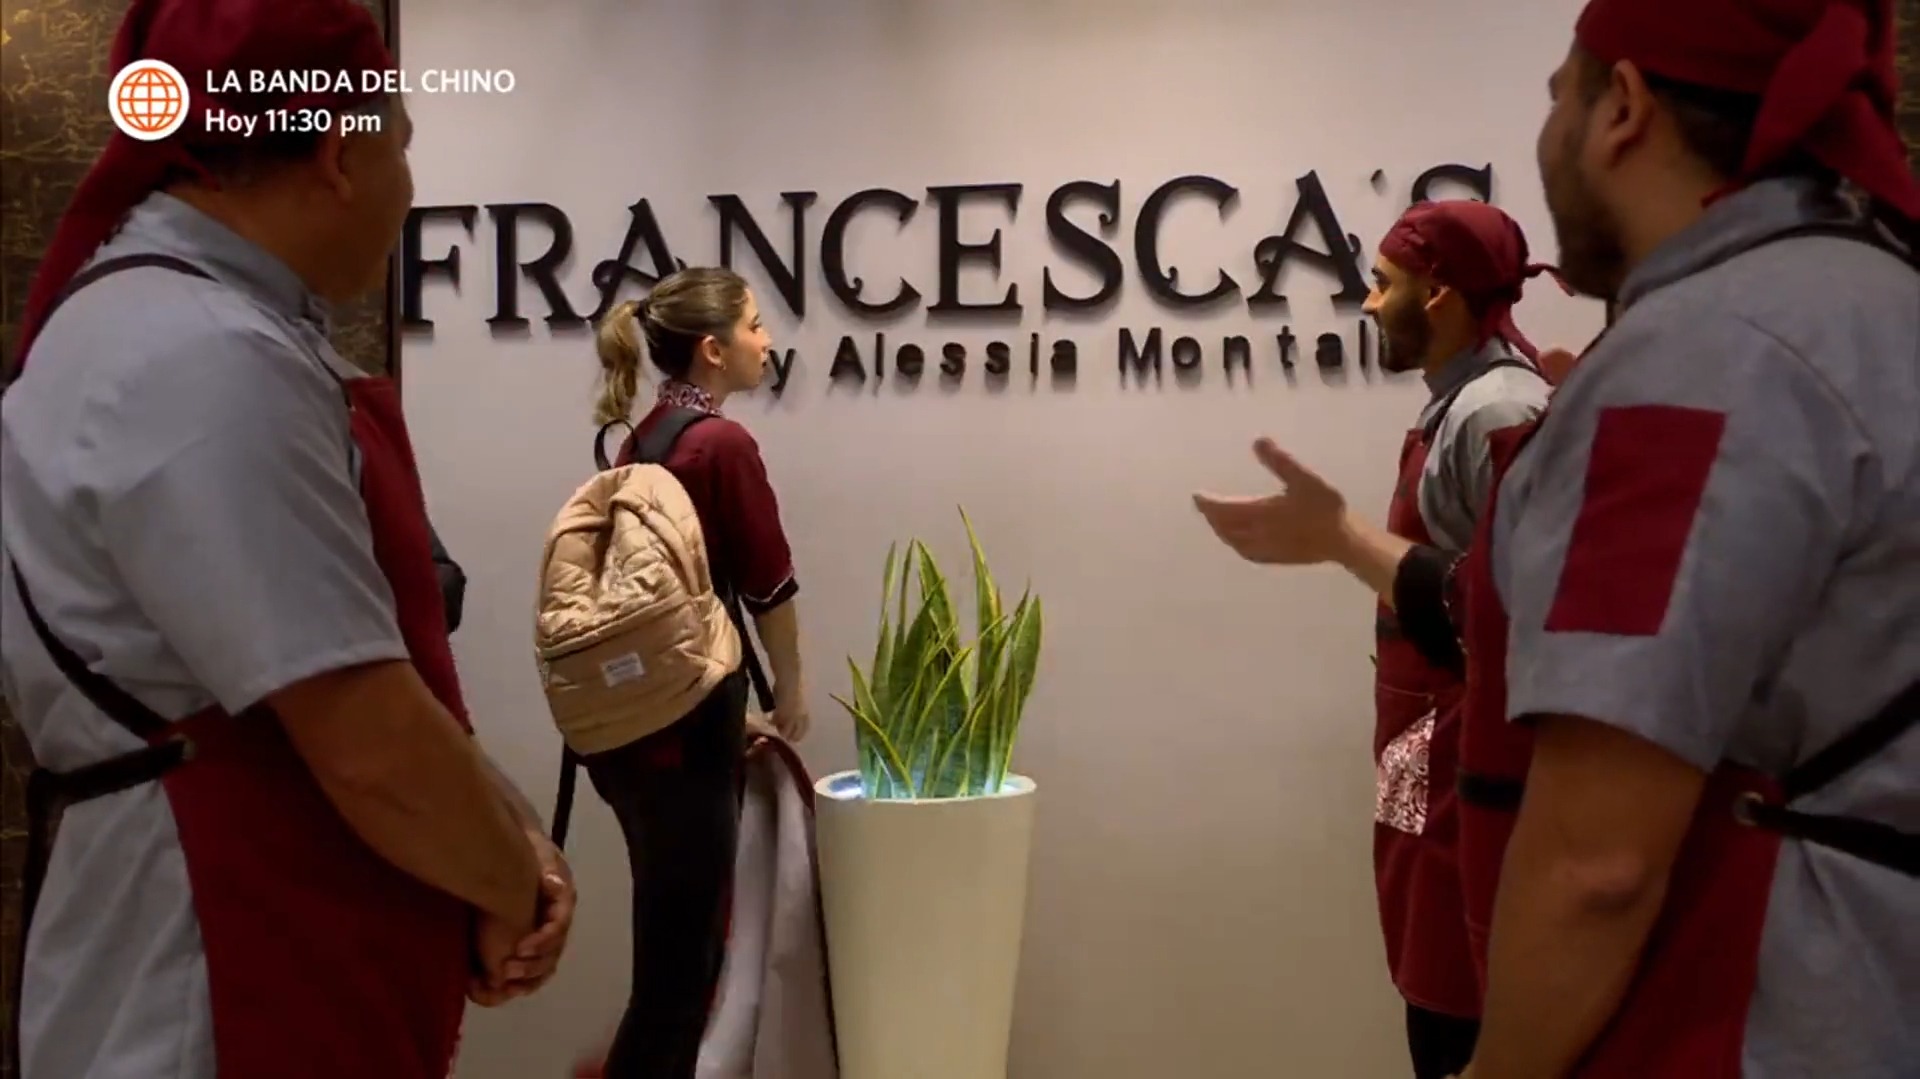 Francesca sorprendió a Alessia con tremendo reconocimiento en restaurante. Fuente: AméricaTV